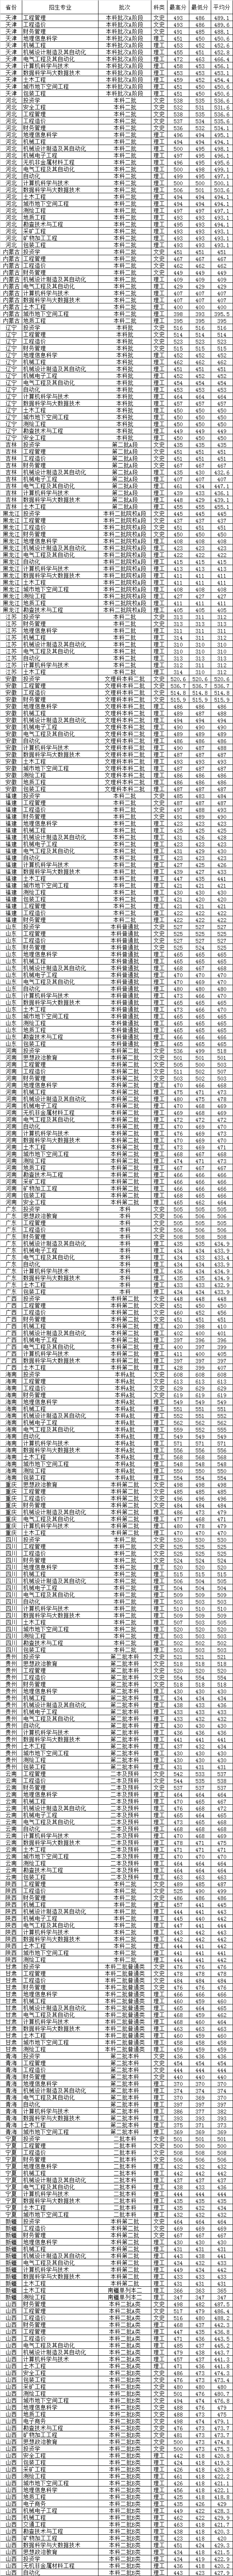 2019山西工程技术学院录取分数线汇总(含2017-2018历年)